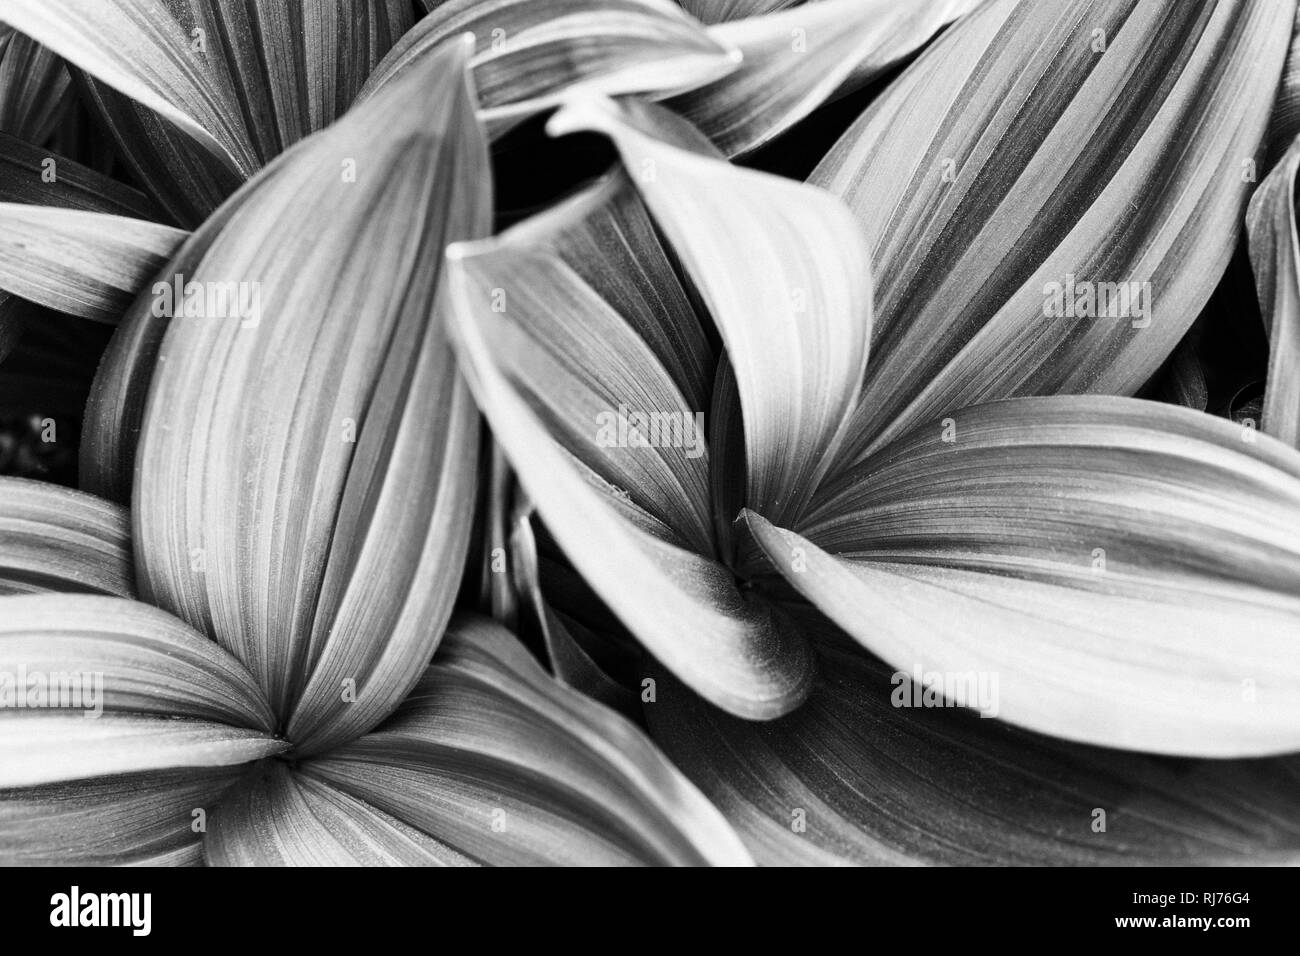 Zierpflanze, gestreifte Blätter in unterschiedlichen Graustufen, Muster, Hintergrund, Stock Photo